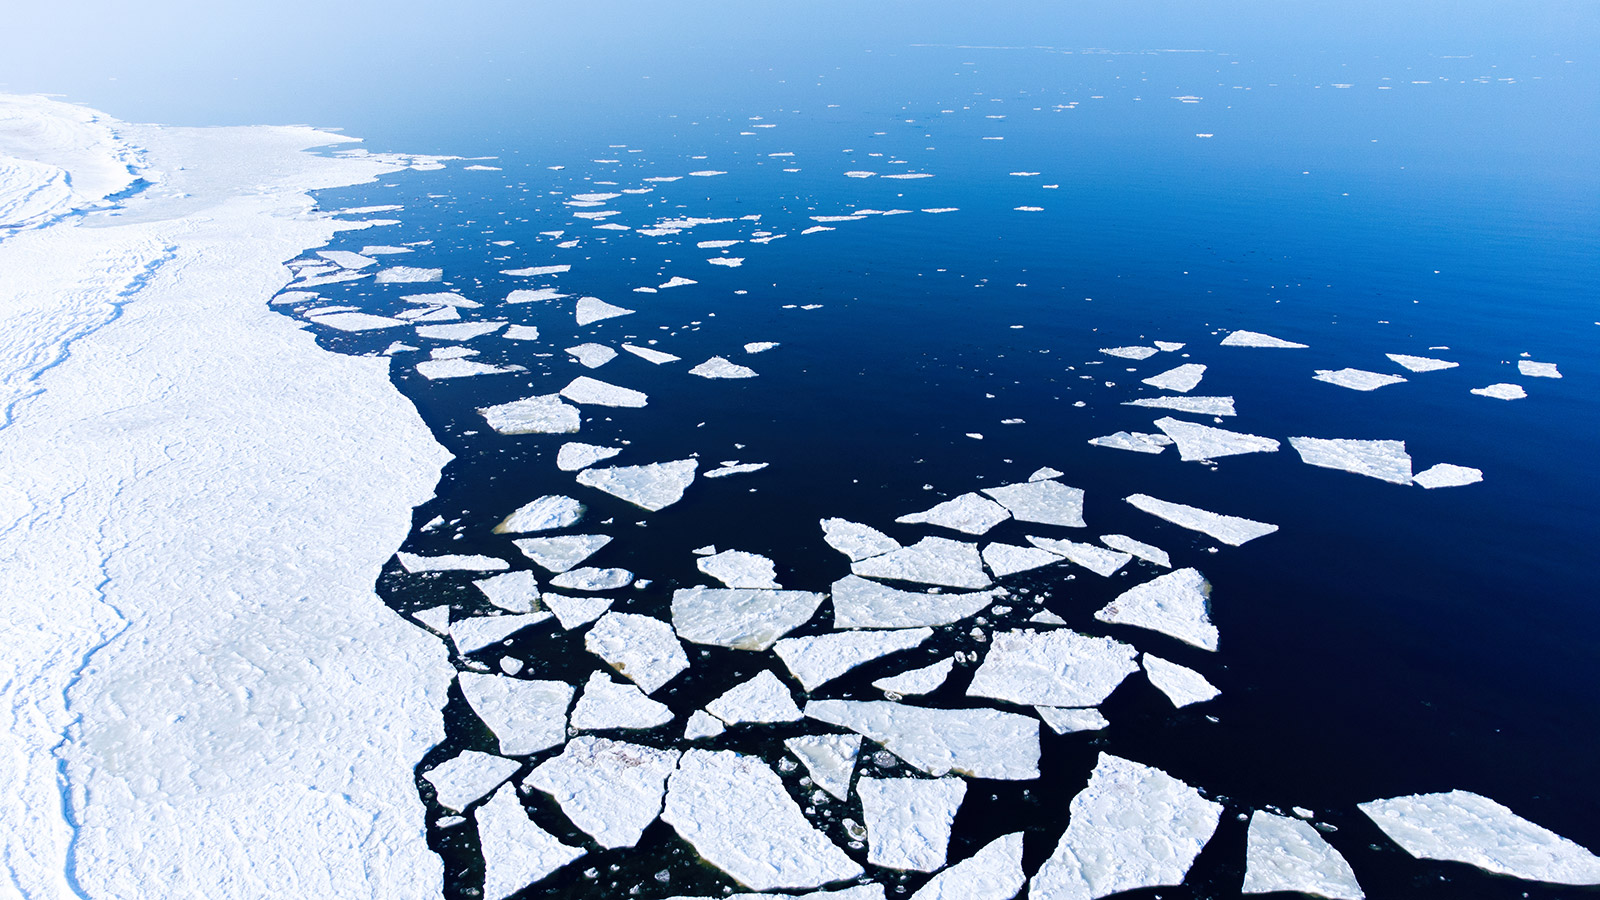 Из-за глобального потепления&nbsp;первые случаи безледного периода в Арктике могут произойти с 2020 по 2030 год